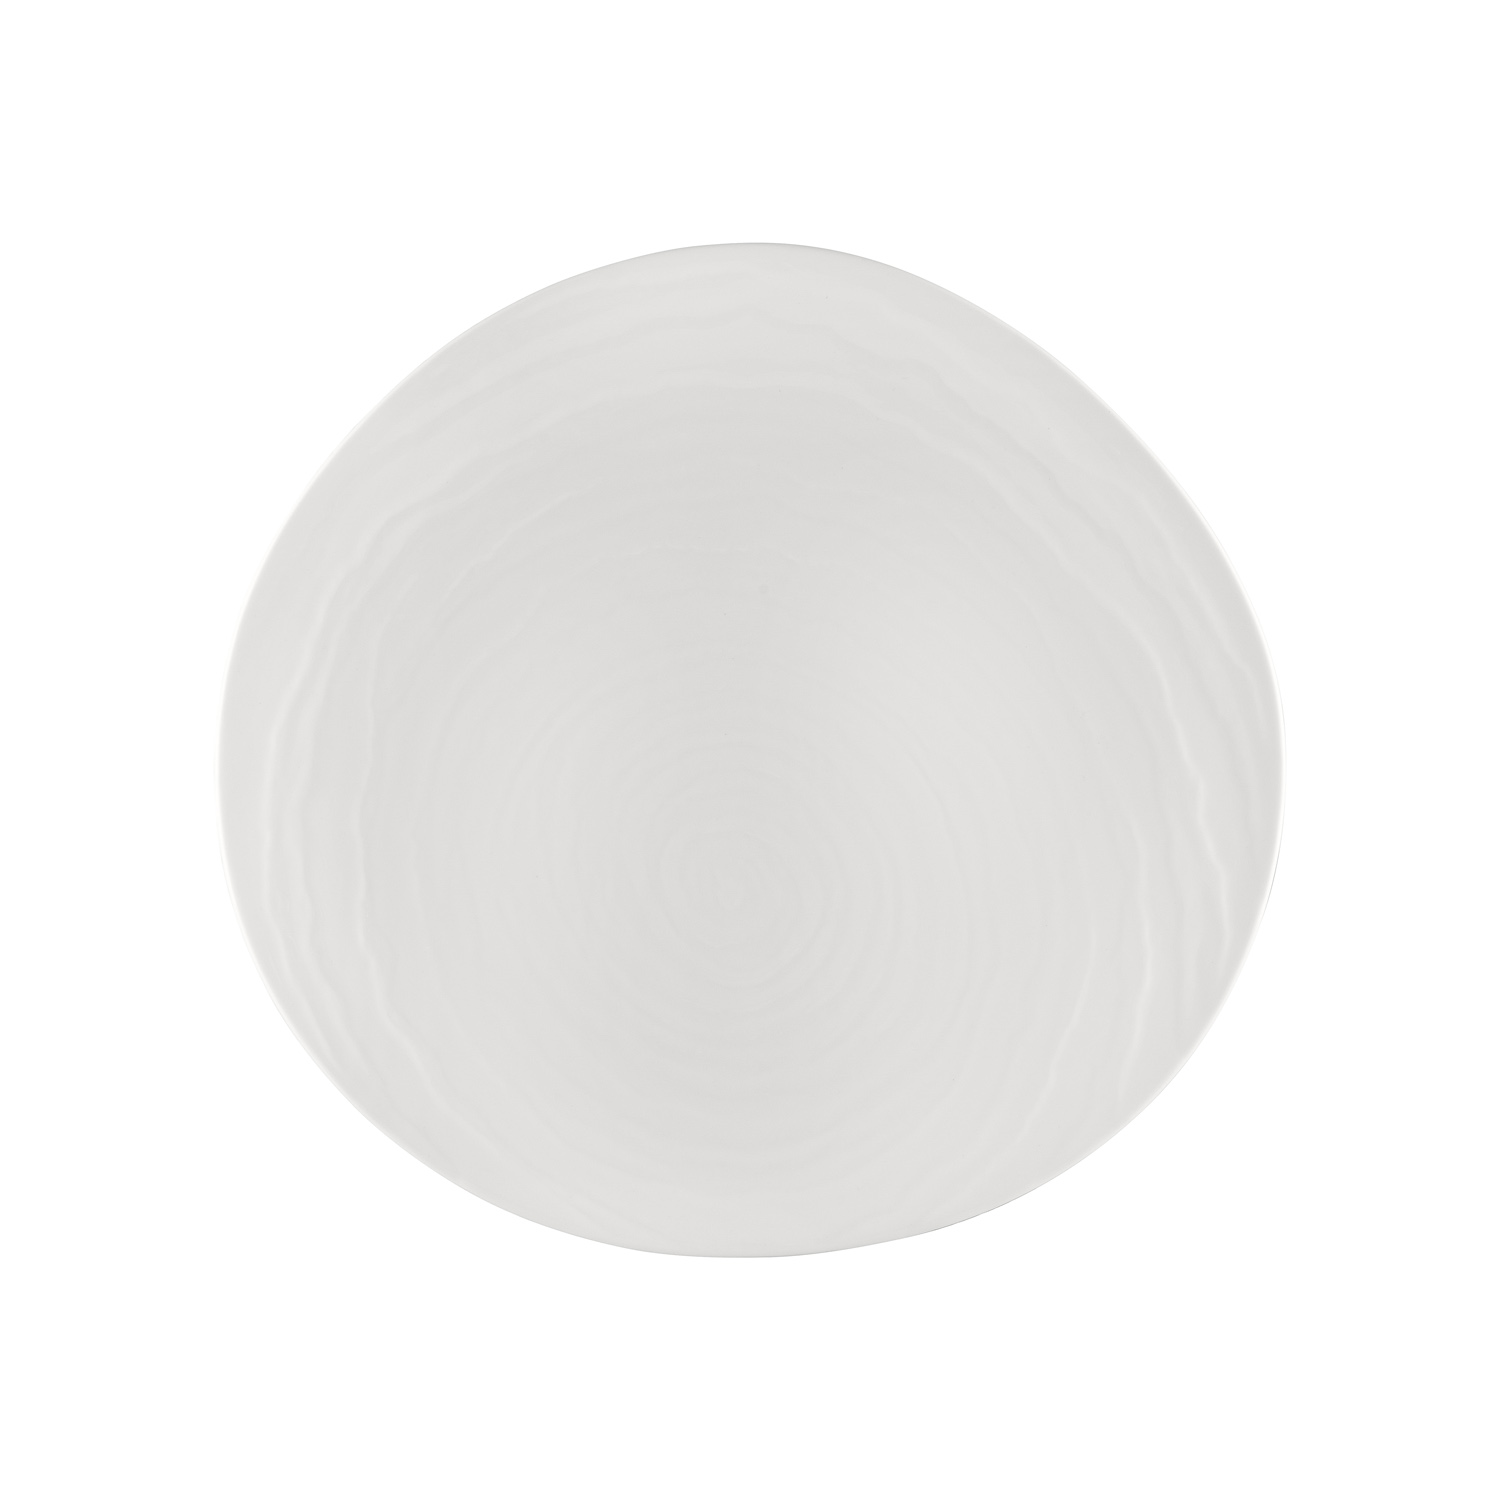 CAC China BHM-16 Bahamas Bone White Porcelain Plate 10 3/4" - 1 dozen